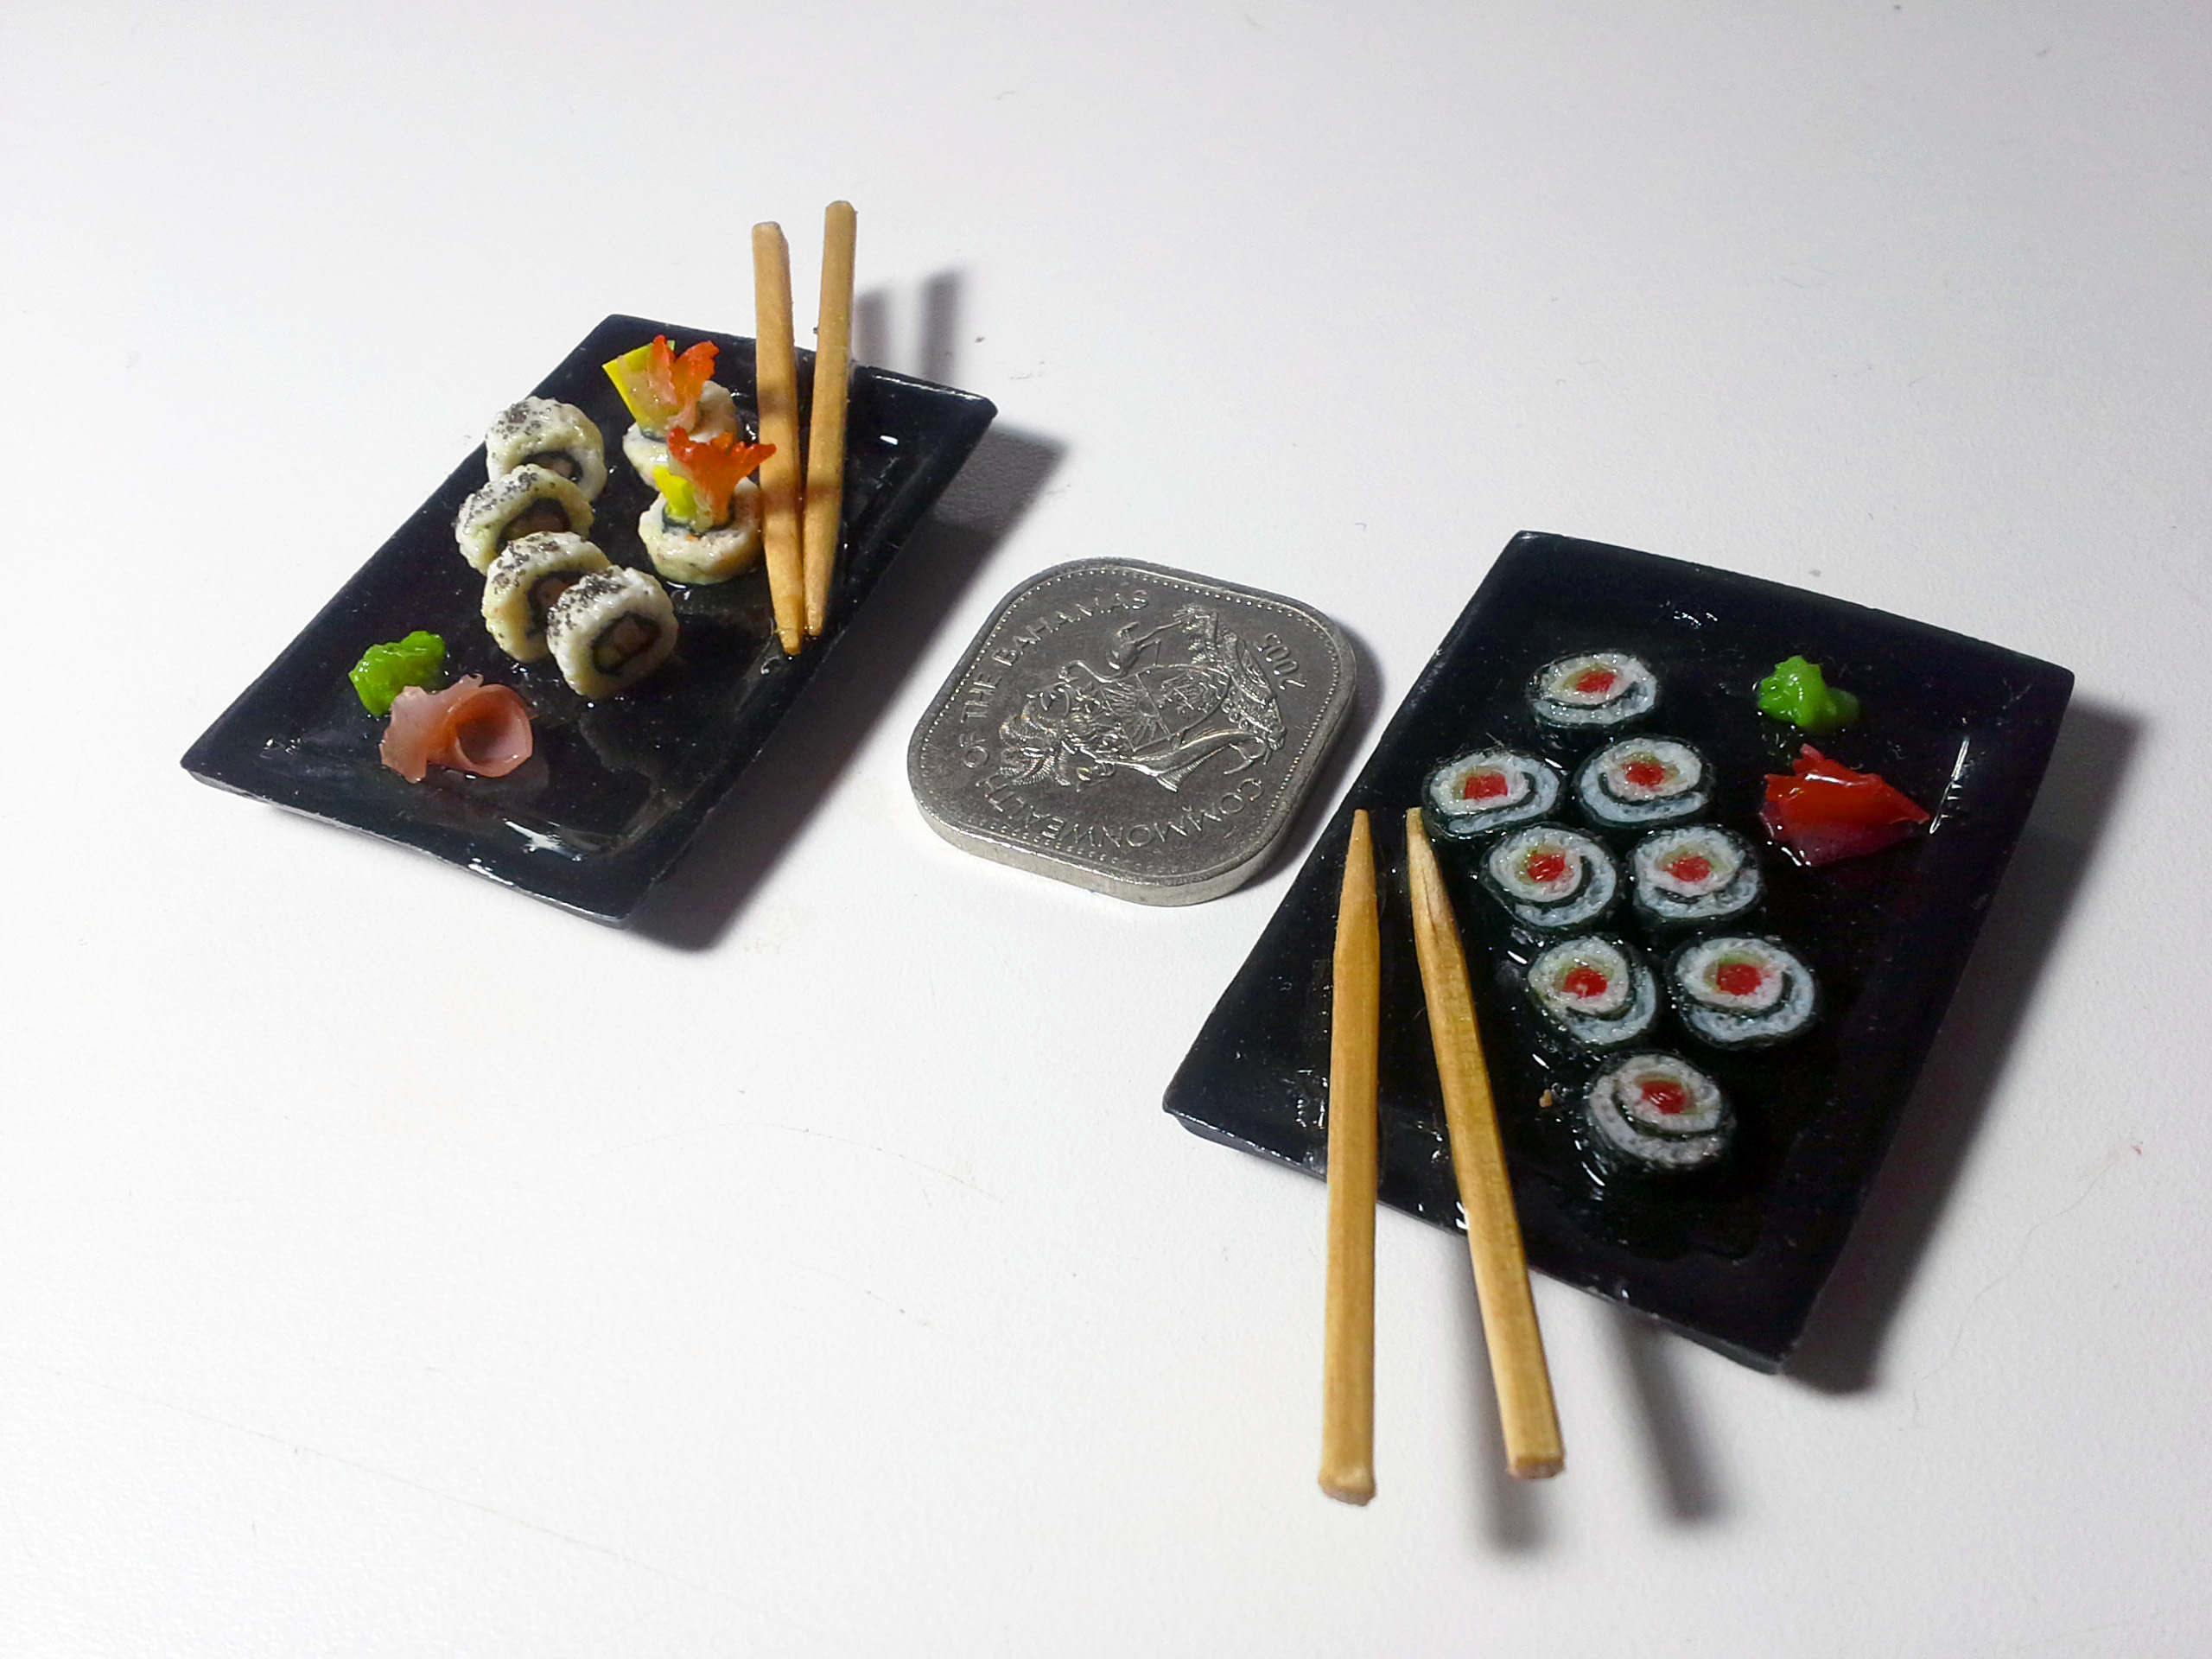 Miniature maki rolls